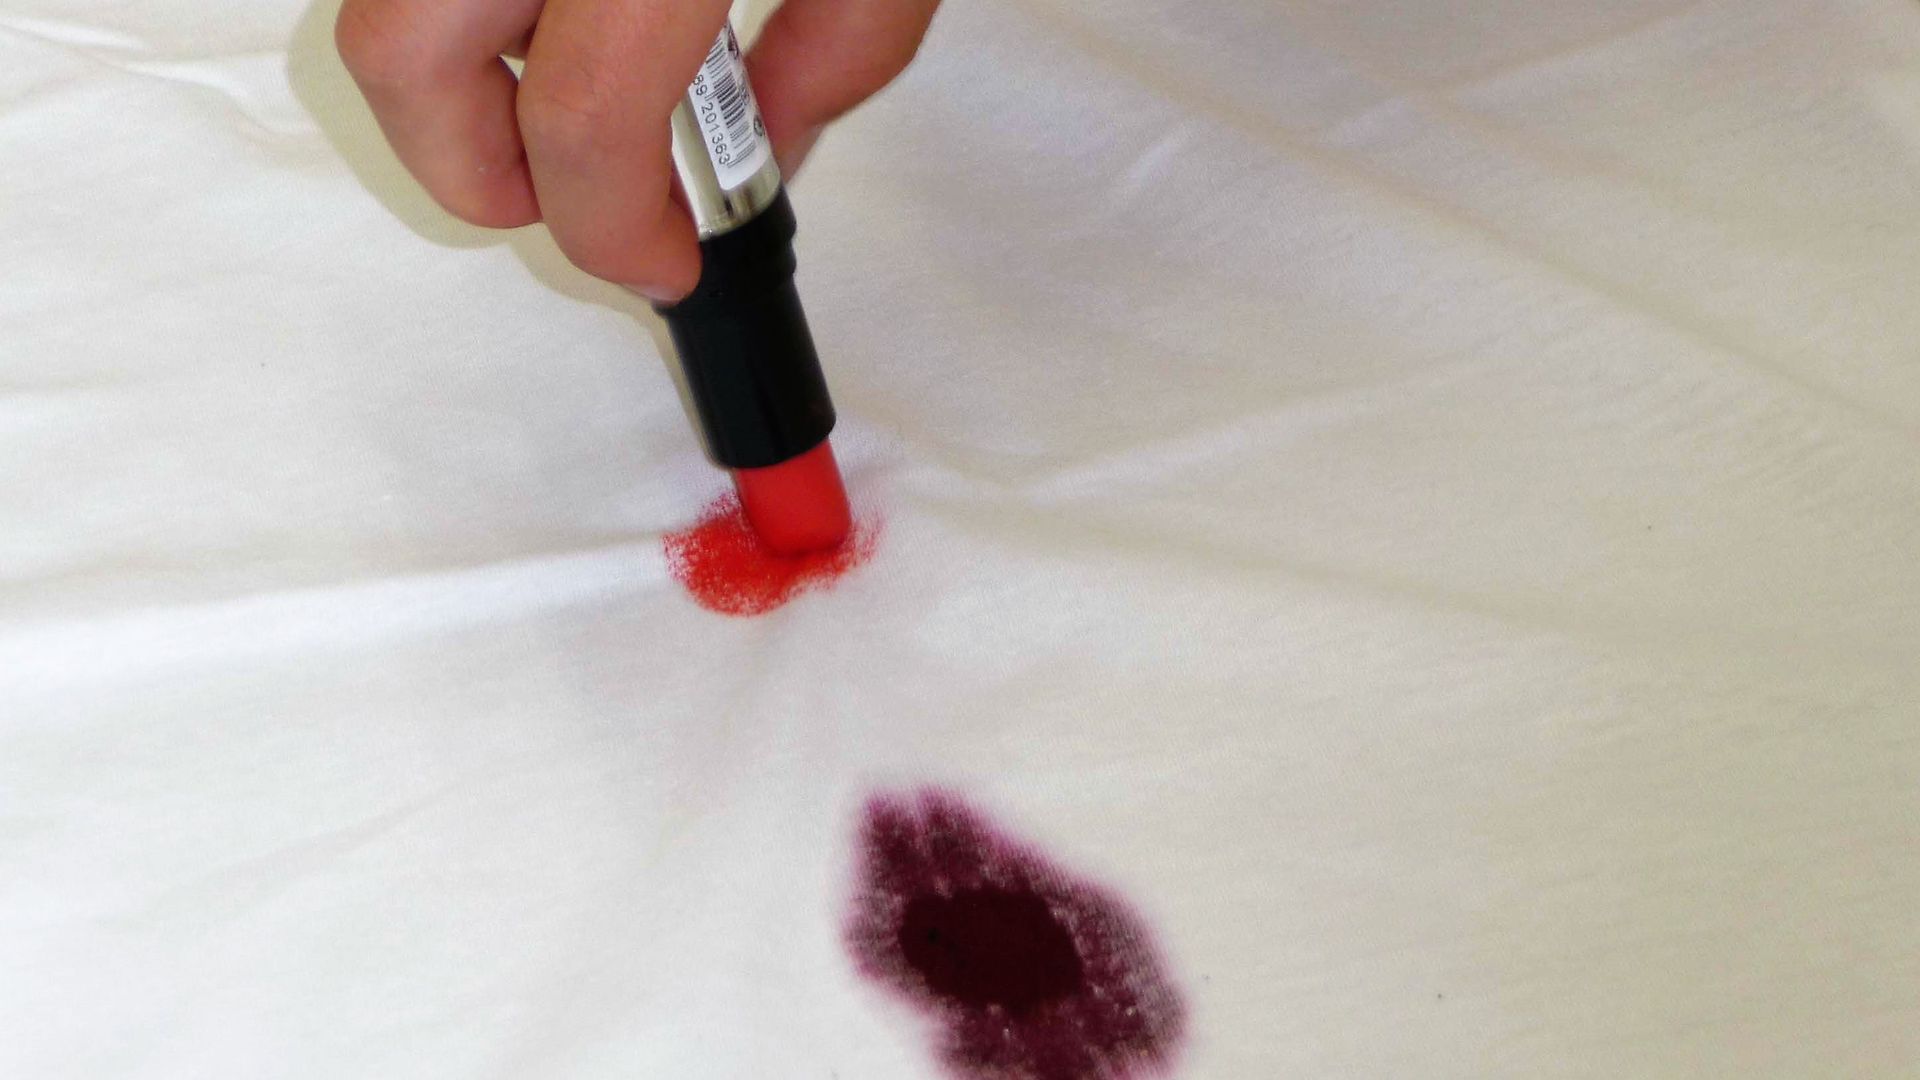 Escritura a mano sobre una tela blanca con un lápiz labial junto a una mancha de vino tinto